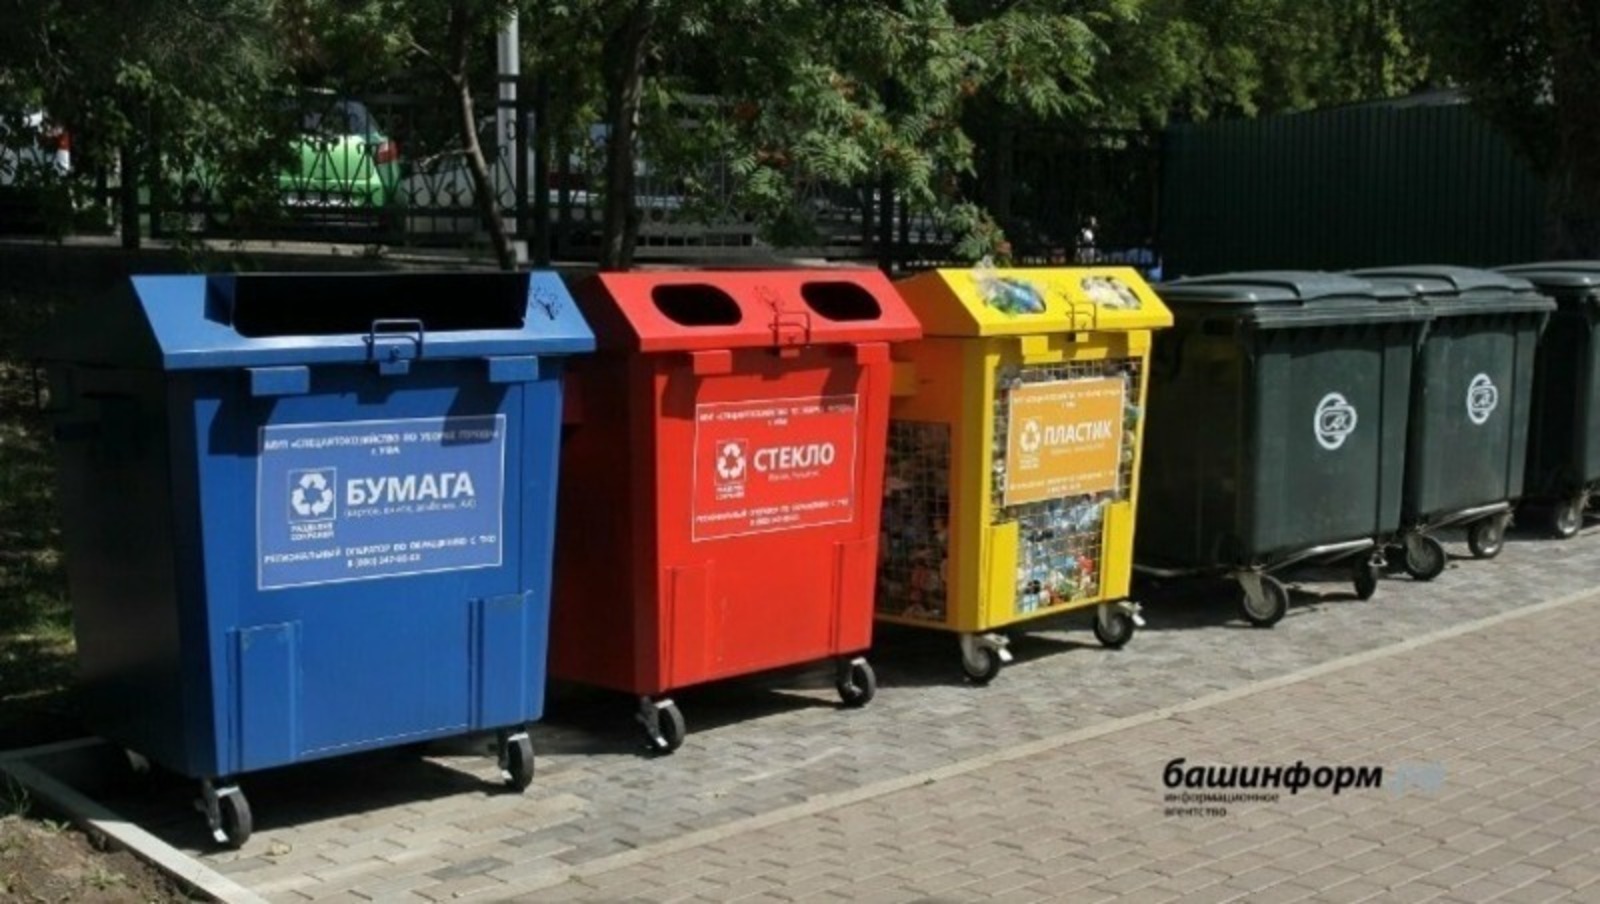 В этом году в Башкирии будет выстроена чёткая система раздельного сбора мусора